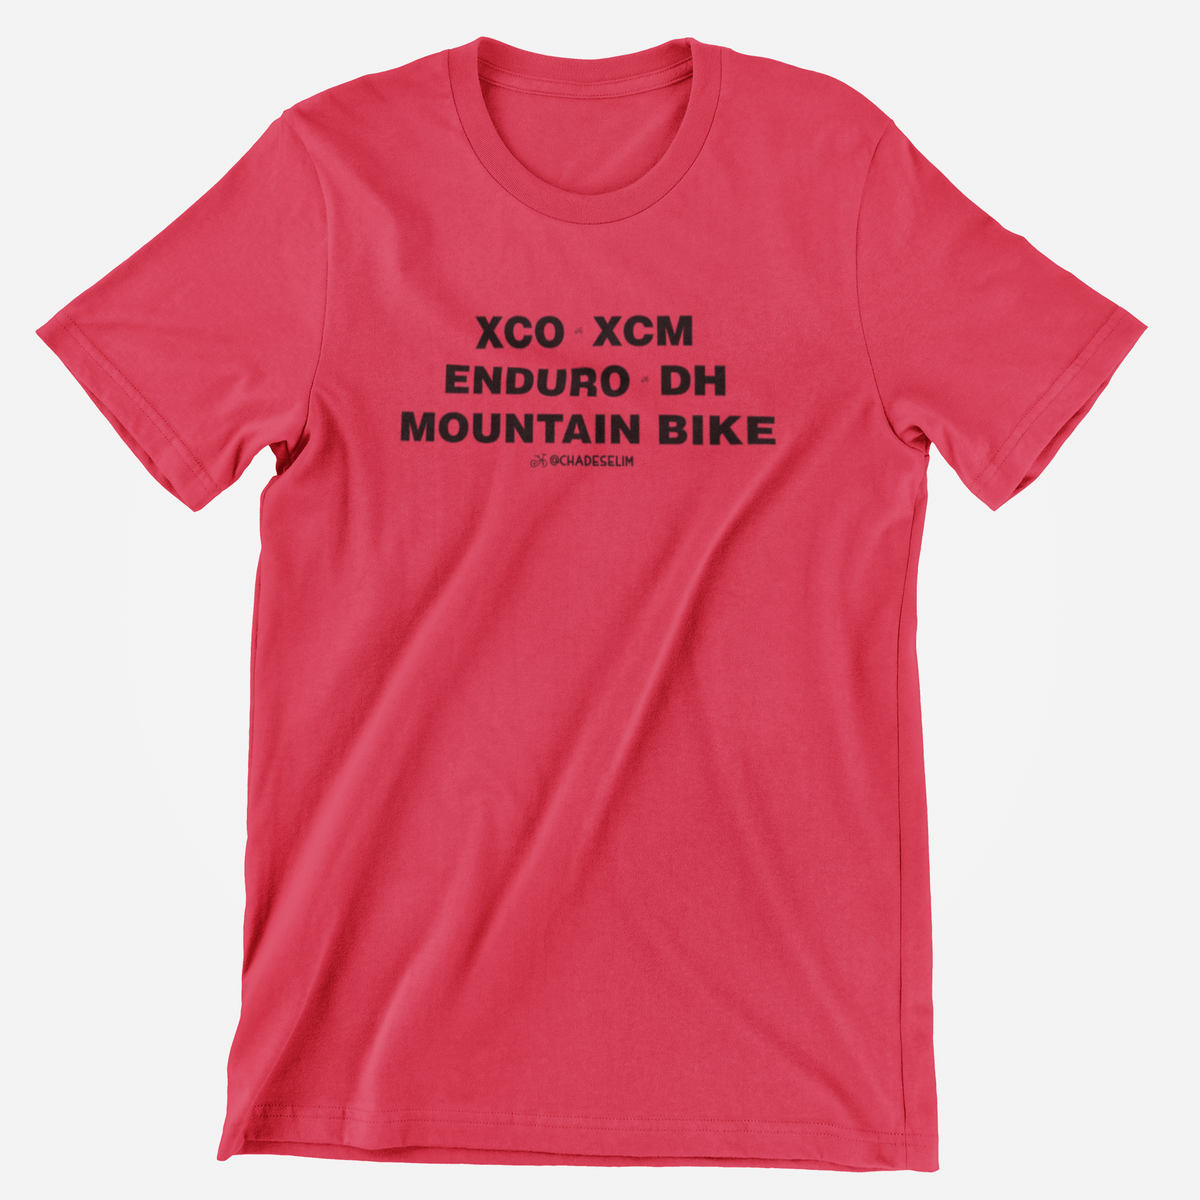 Nome do produto: Tudo é mountain bike - TSHIRT UNISSEX